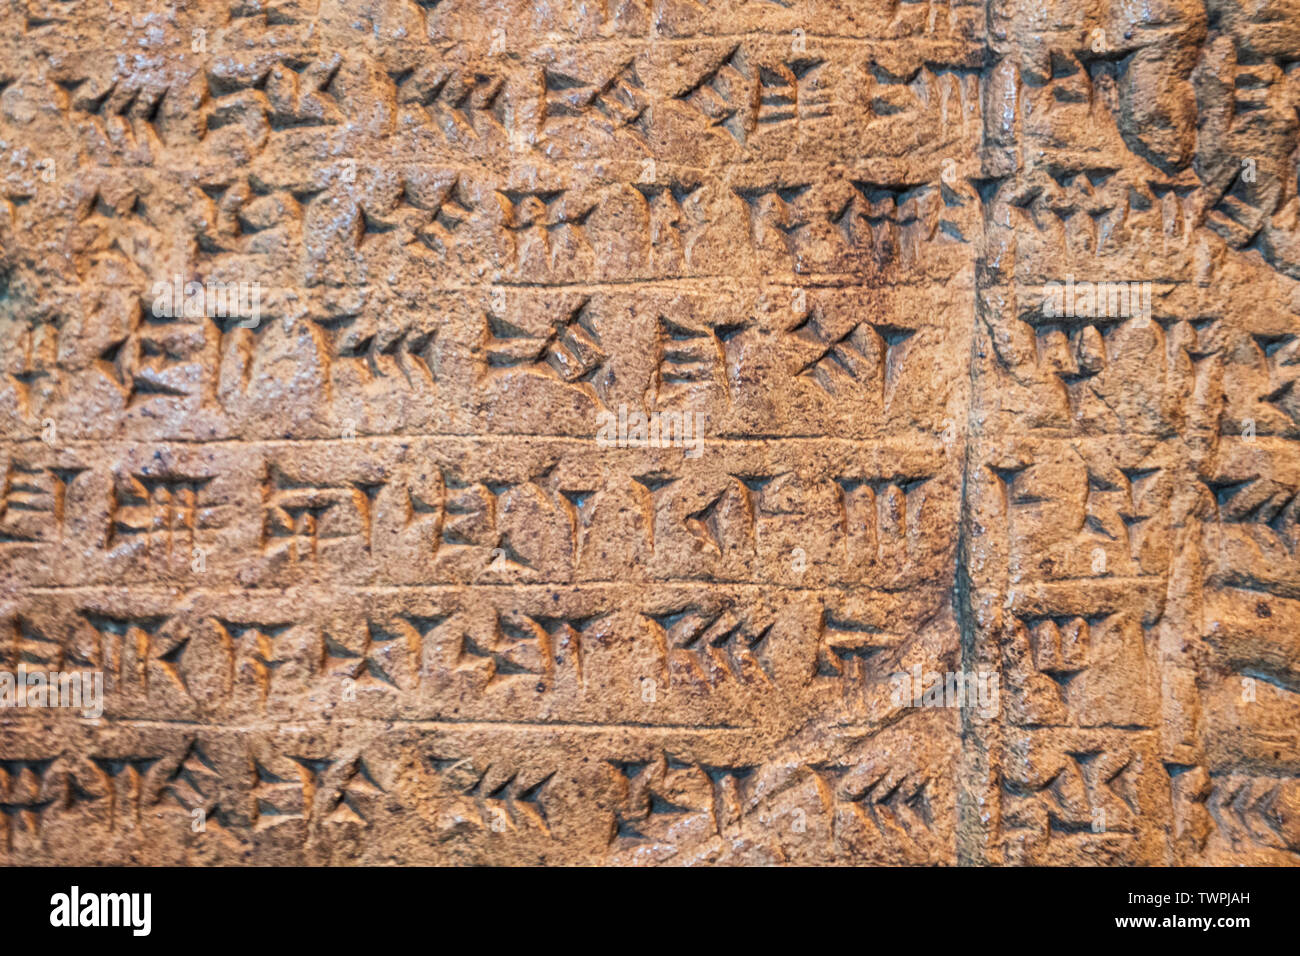 Antico assiro e Sumeri scrittura cuneiforme sculture su pietra dalla Mesopotamia . Foto Stock